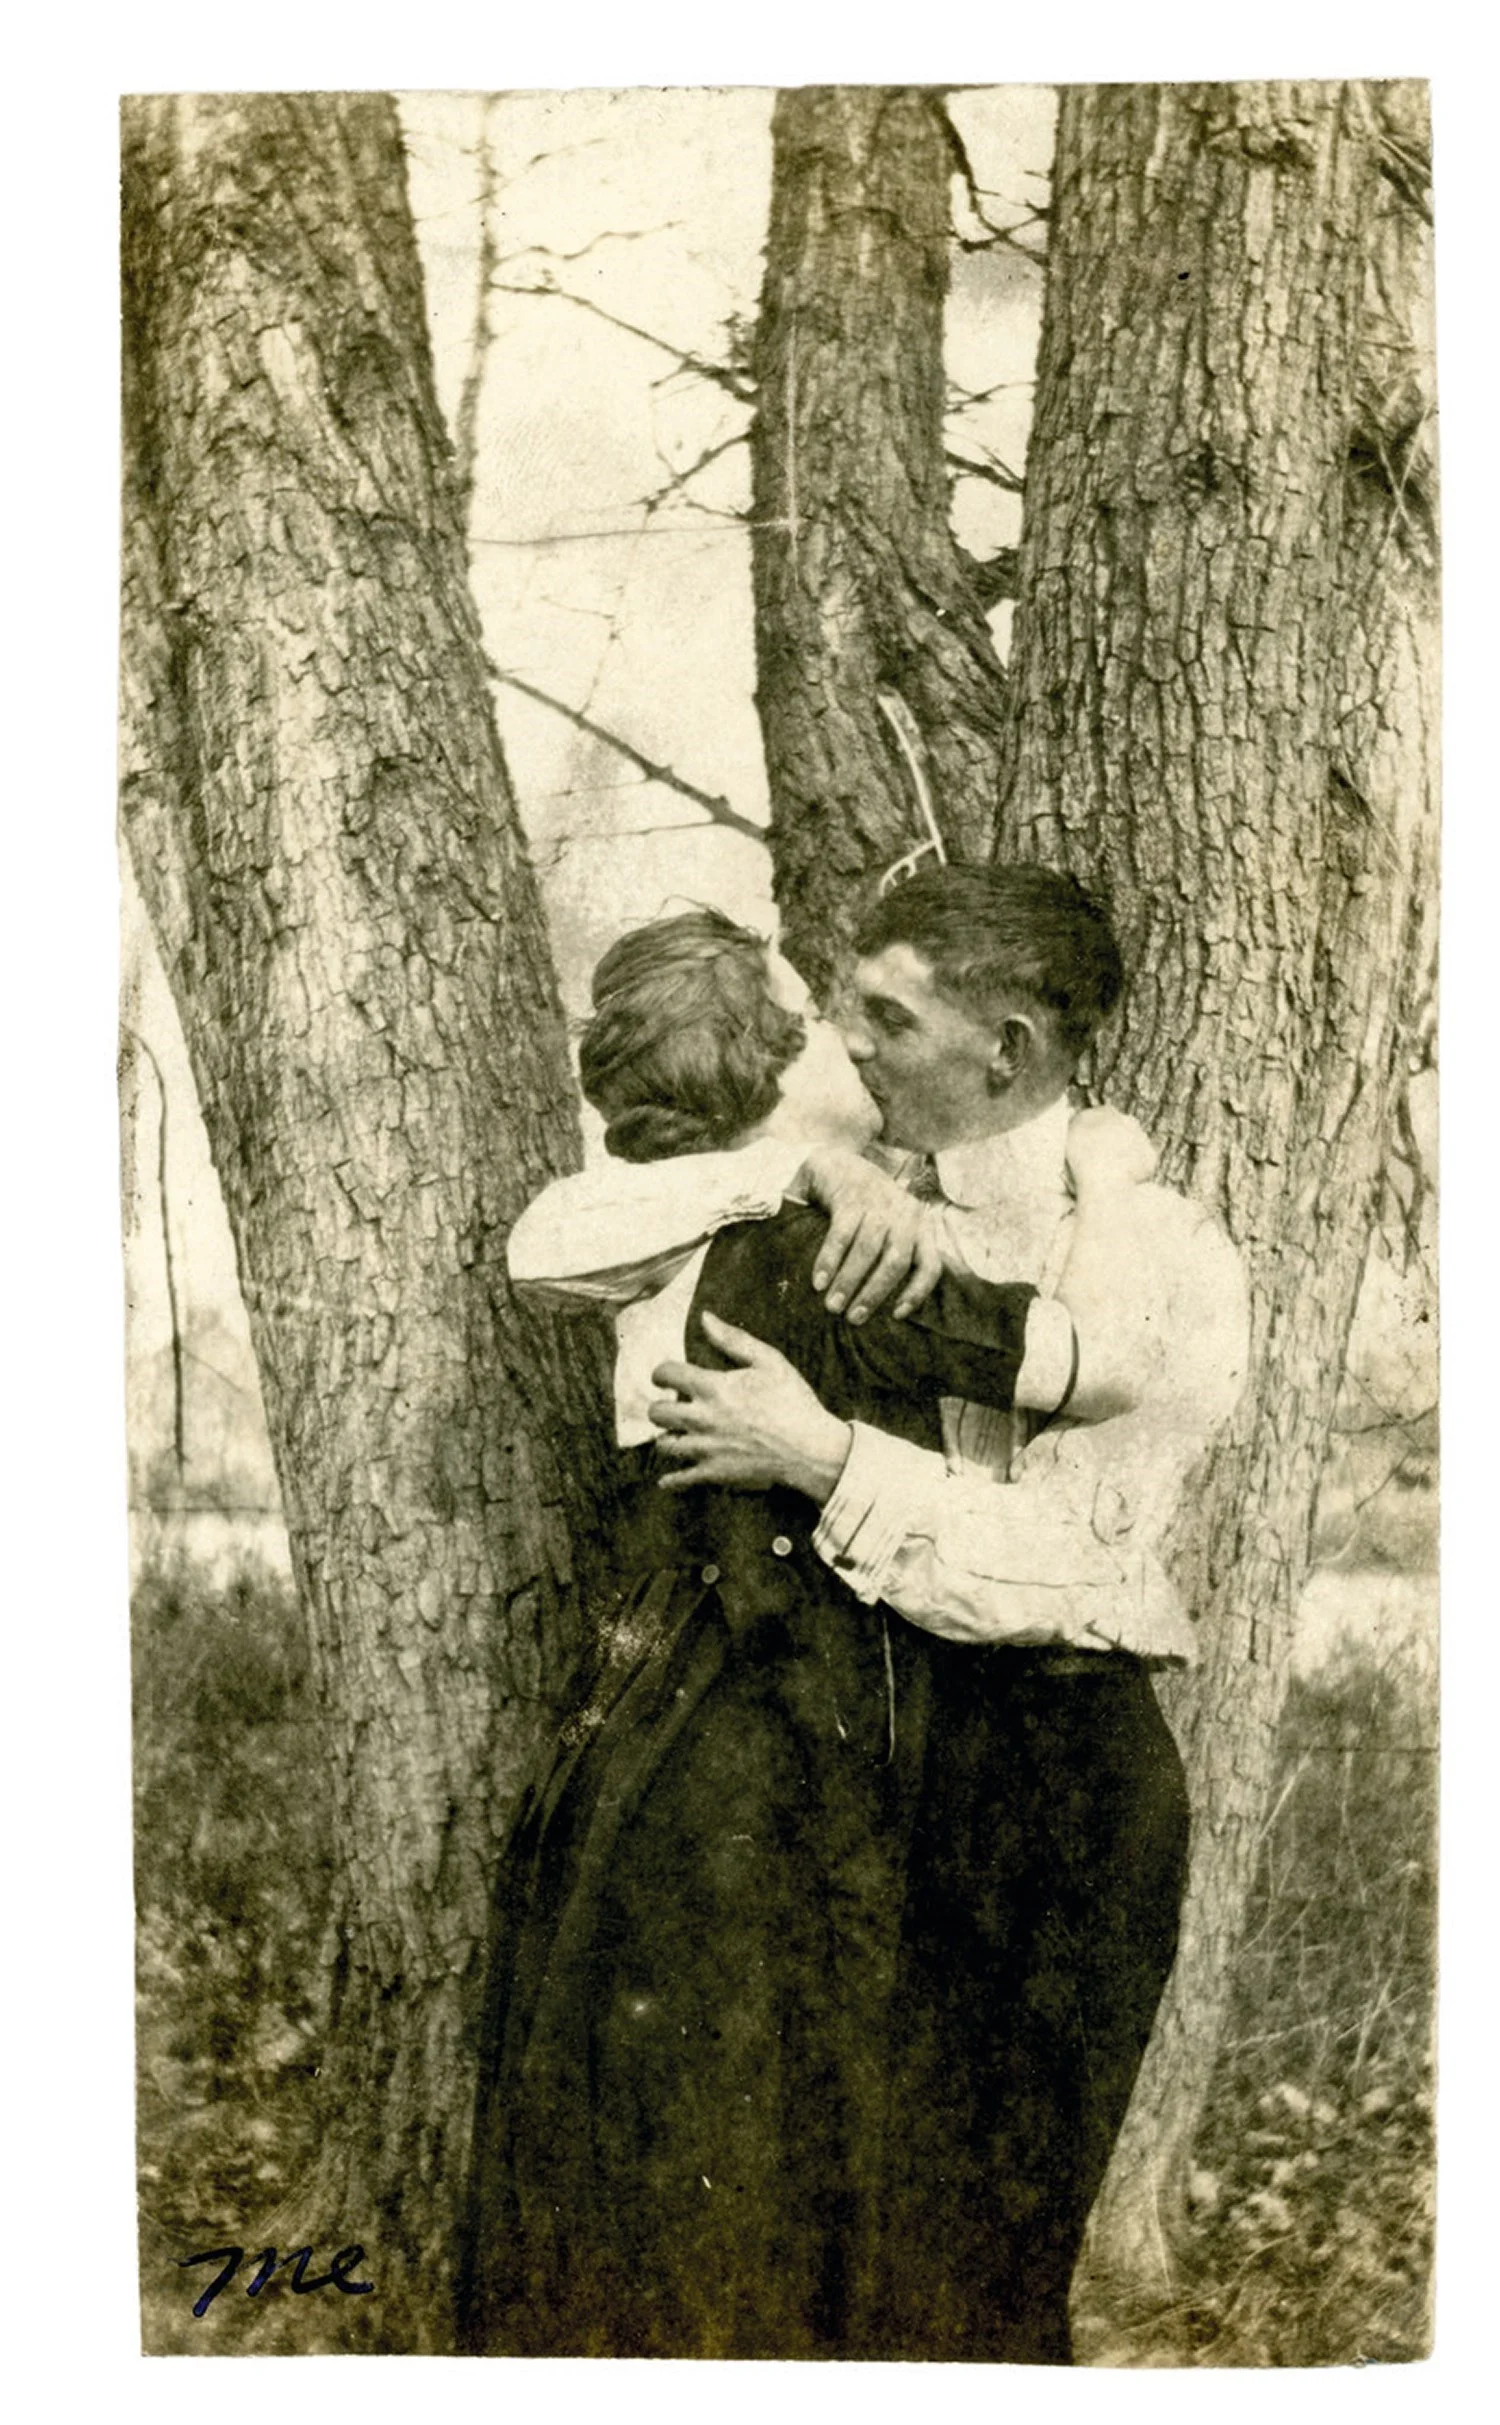 Машина часу: архівні фото про те, як цілувалися закохані 100 років тому - фото 486025